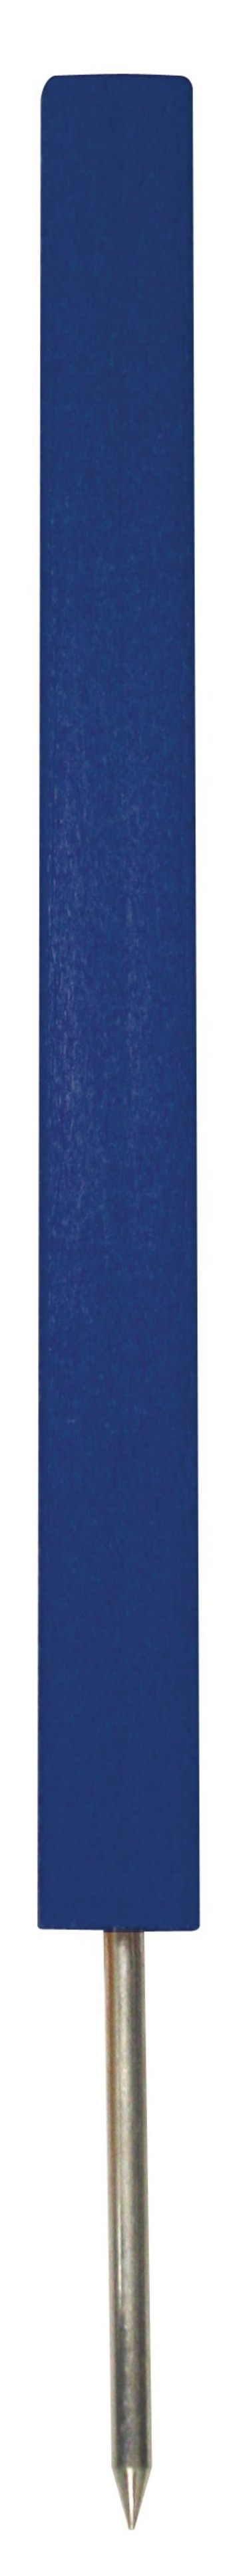 PREMIUM Gefahrenmarker 61 cm mit Spike , blau